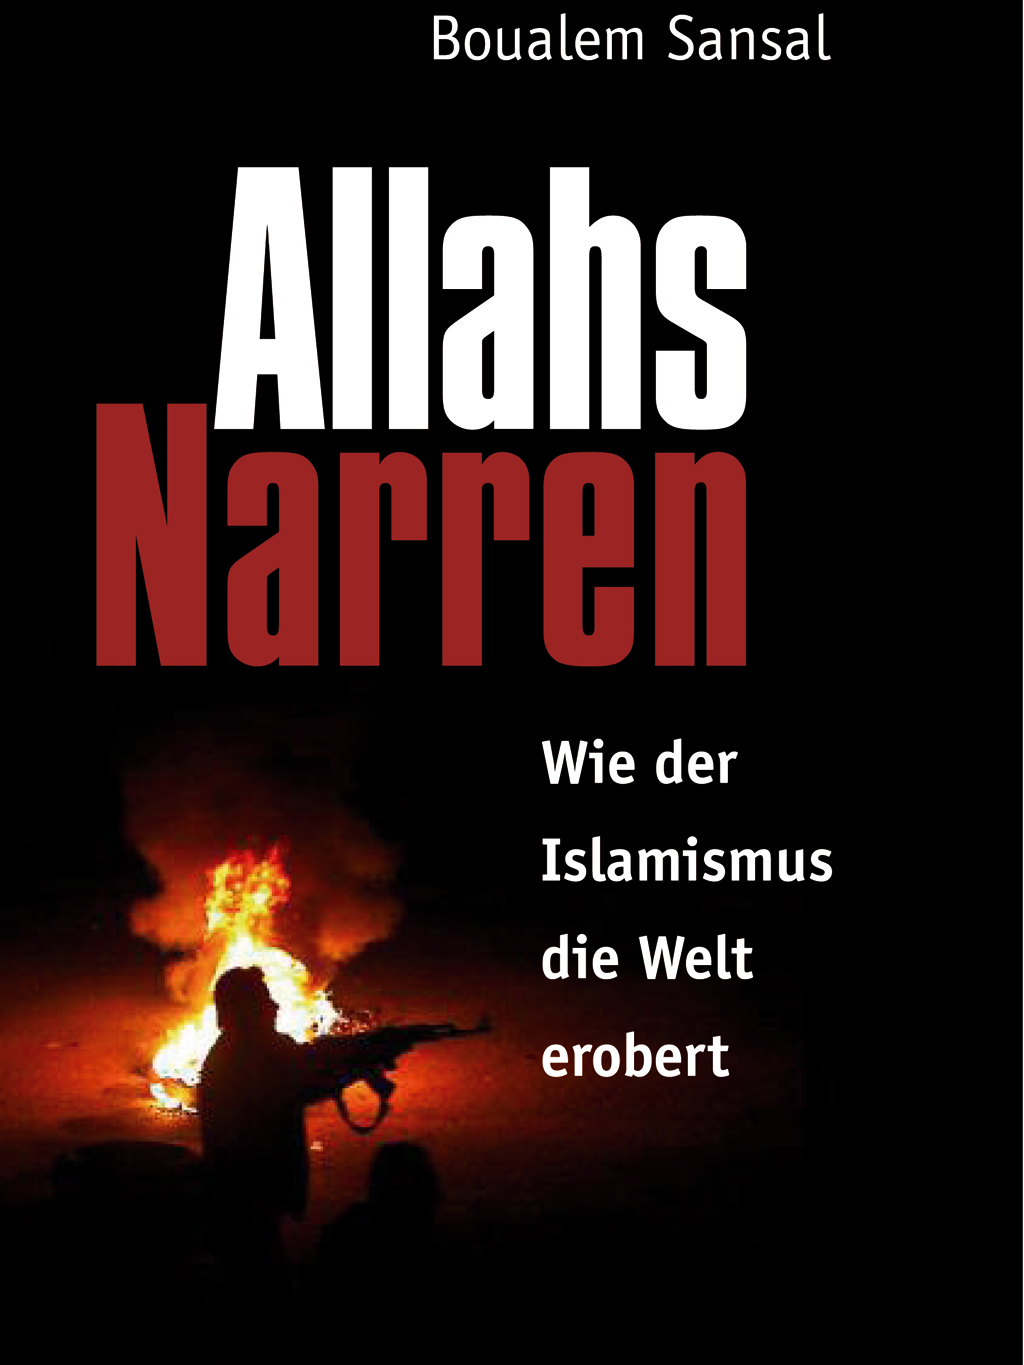 Buchcover Allahs Narren von Boualem Sansal im Merlin-Verlag